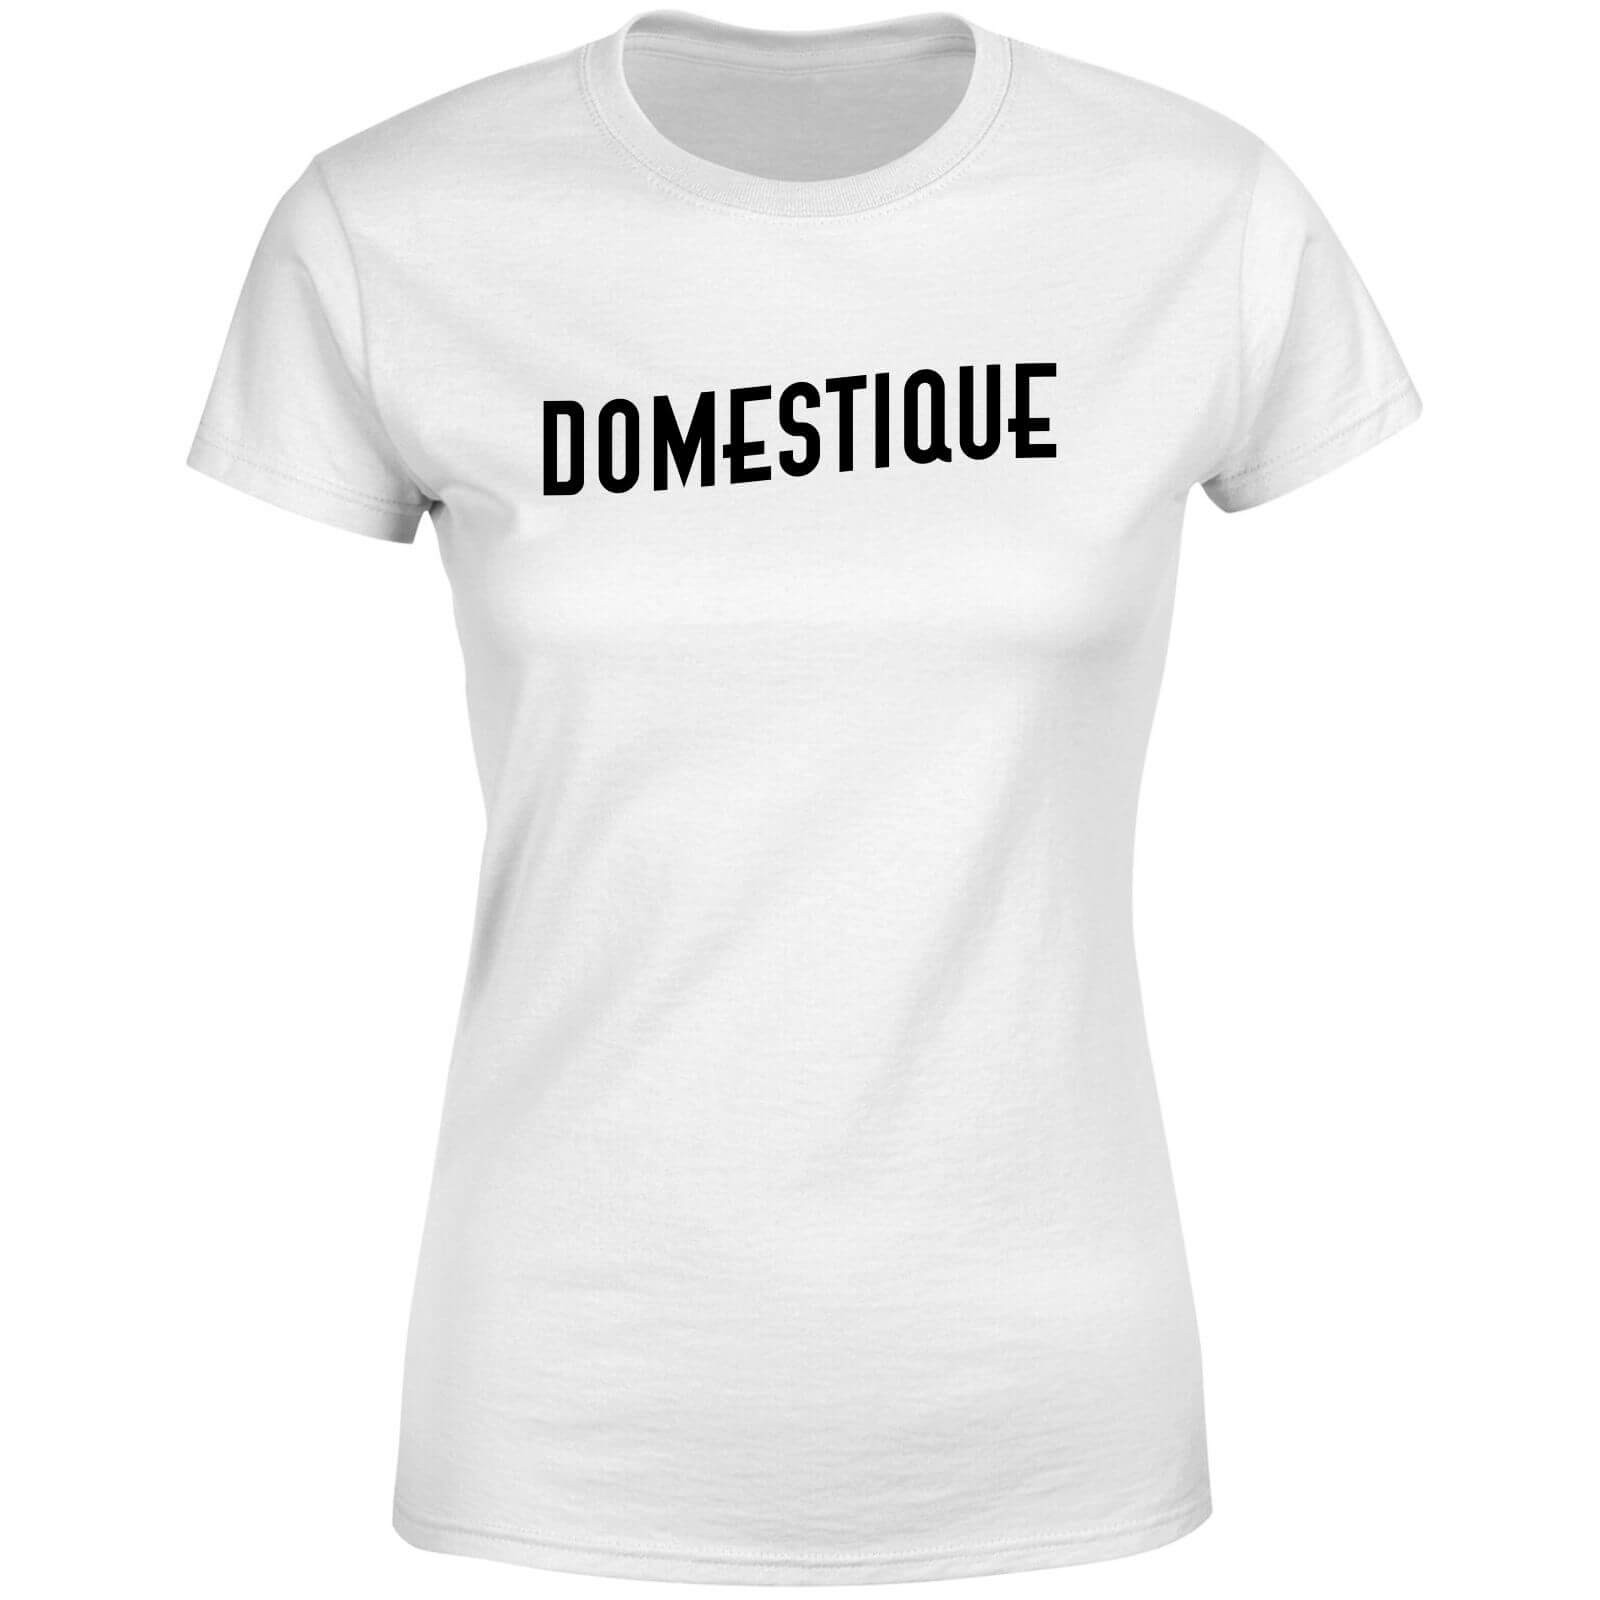 Domestique Women's T-Shirt - White - 4XL - White